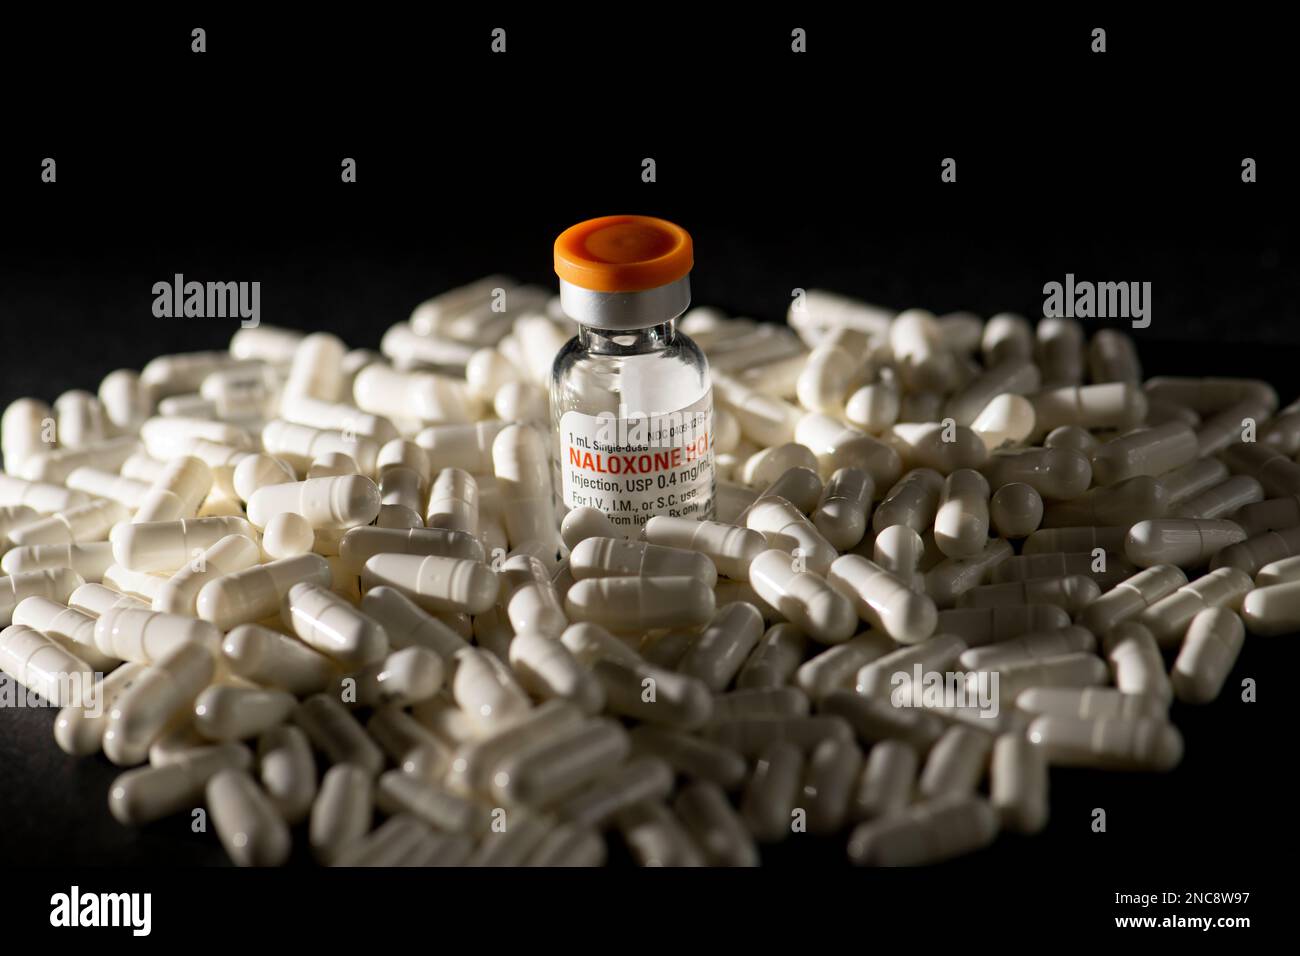 Une bouteille de naloxone sur un tas de pilules sur fond noir. La naloxone est un médicament qui sauve la vie qui peut inverser un surdosage d'opioïdes. Banque D'Images